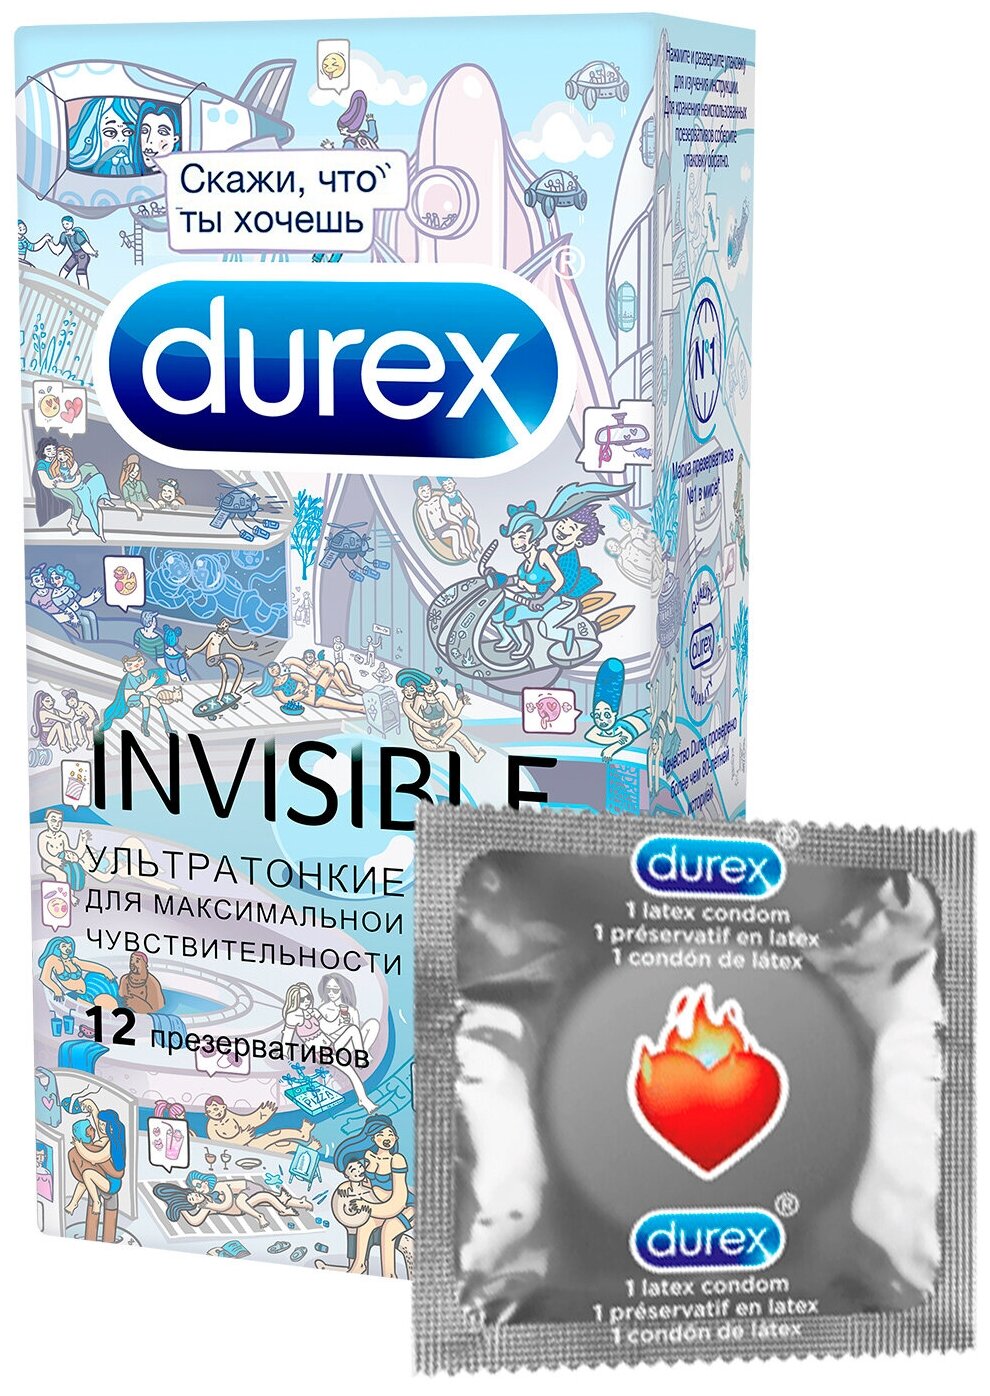 Презервативы Durex (Дюрекс) Invisible ультратонкие 12 шт. doodle Рекитт Бенкизер Хелскэр (ЮК) Лтд - фото №10